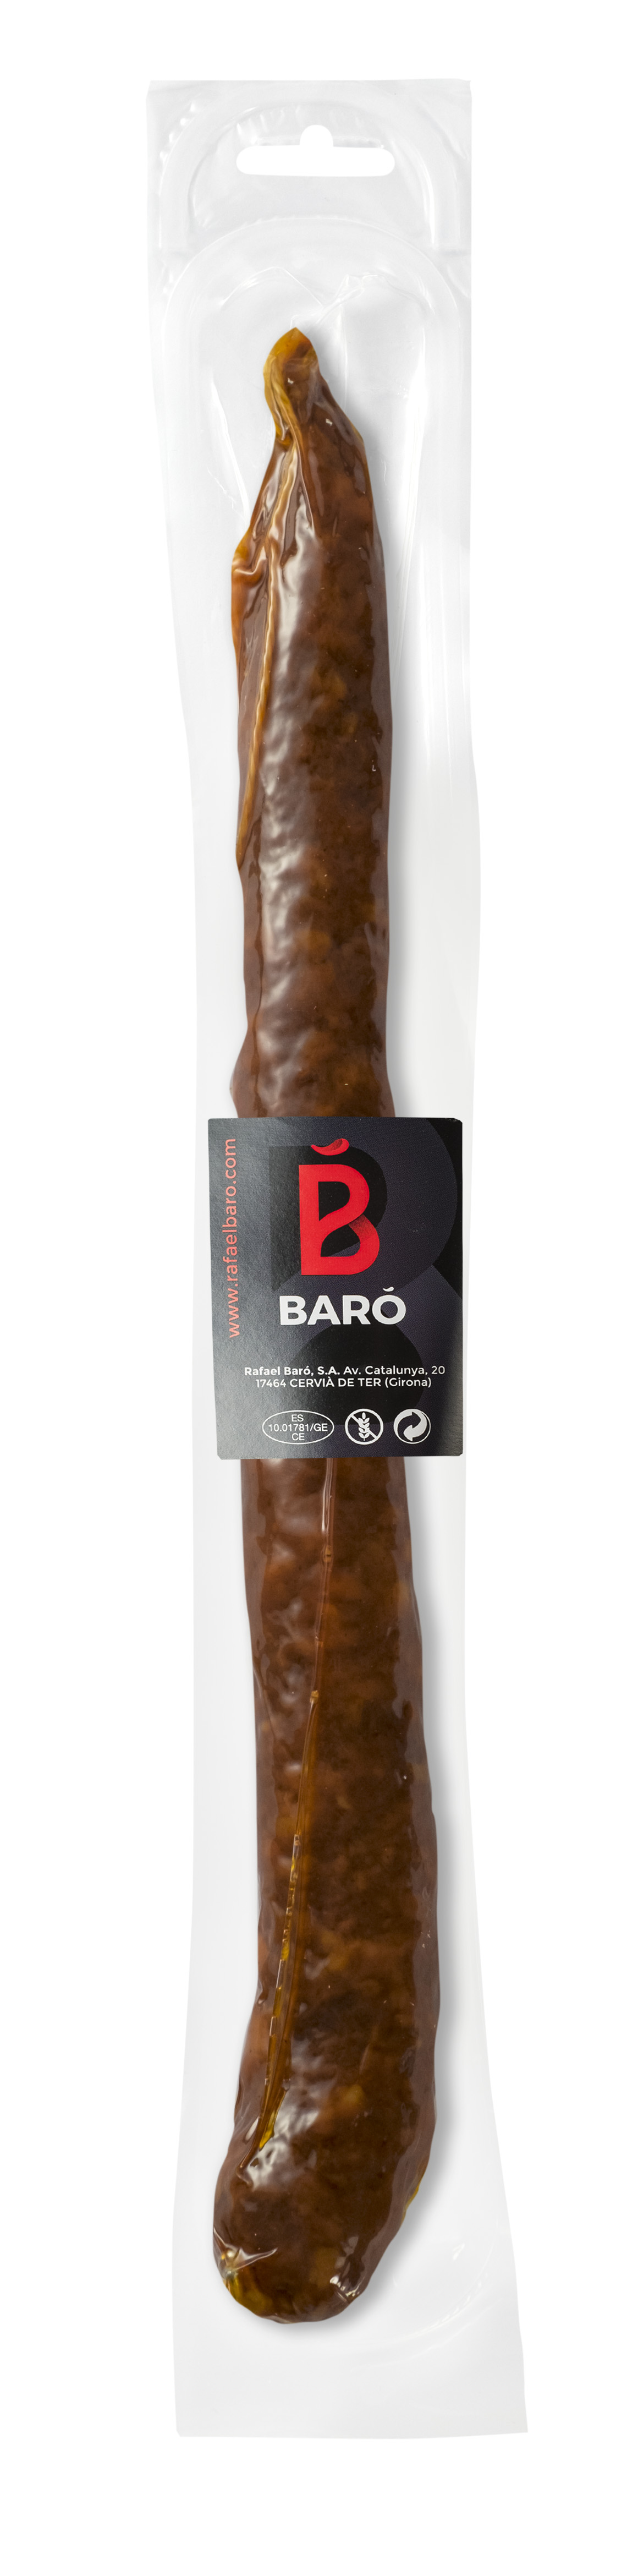 Baro Fuet Chorizo Sweet (150g)